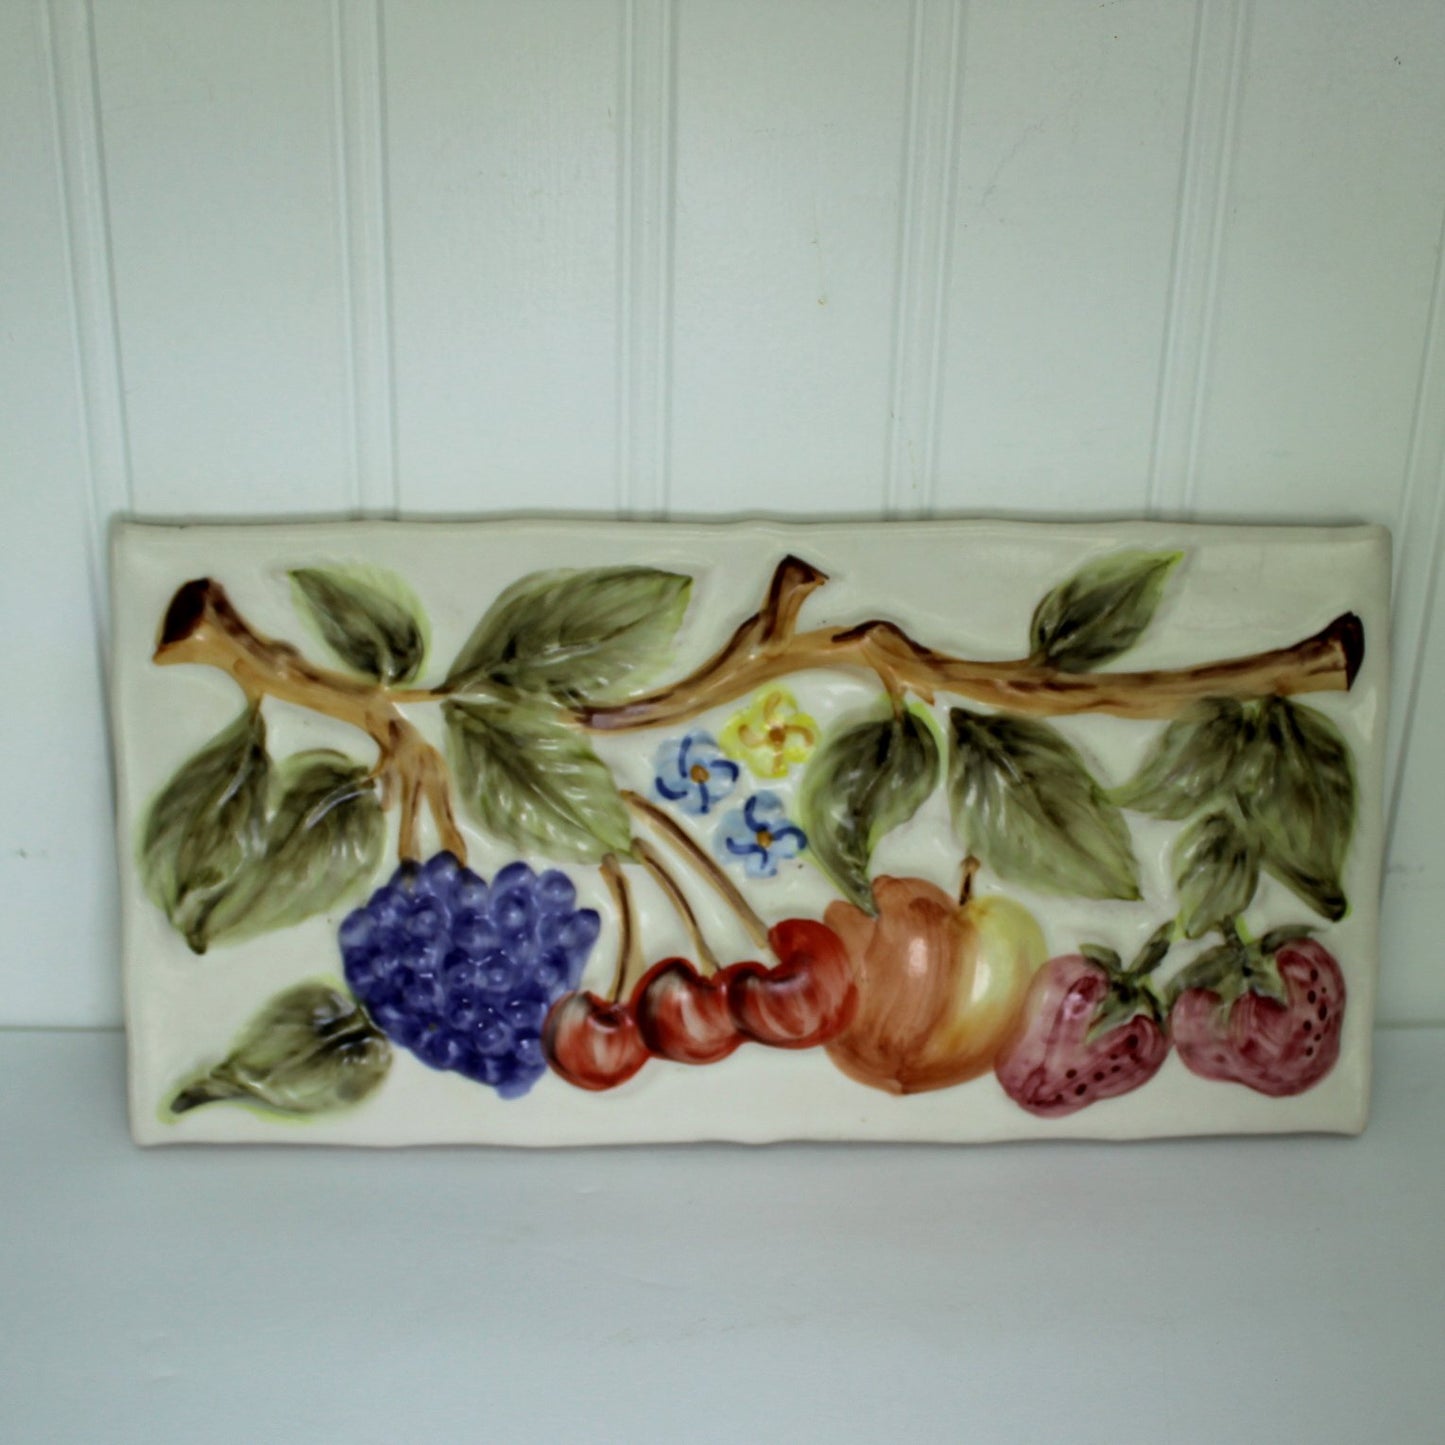 Pair Decorative Tiles DIY Project Kitchen Decor Fruit Bread Miel fruit design